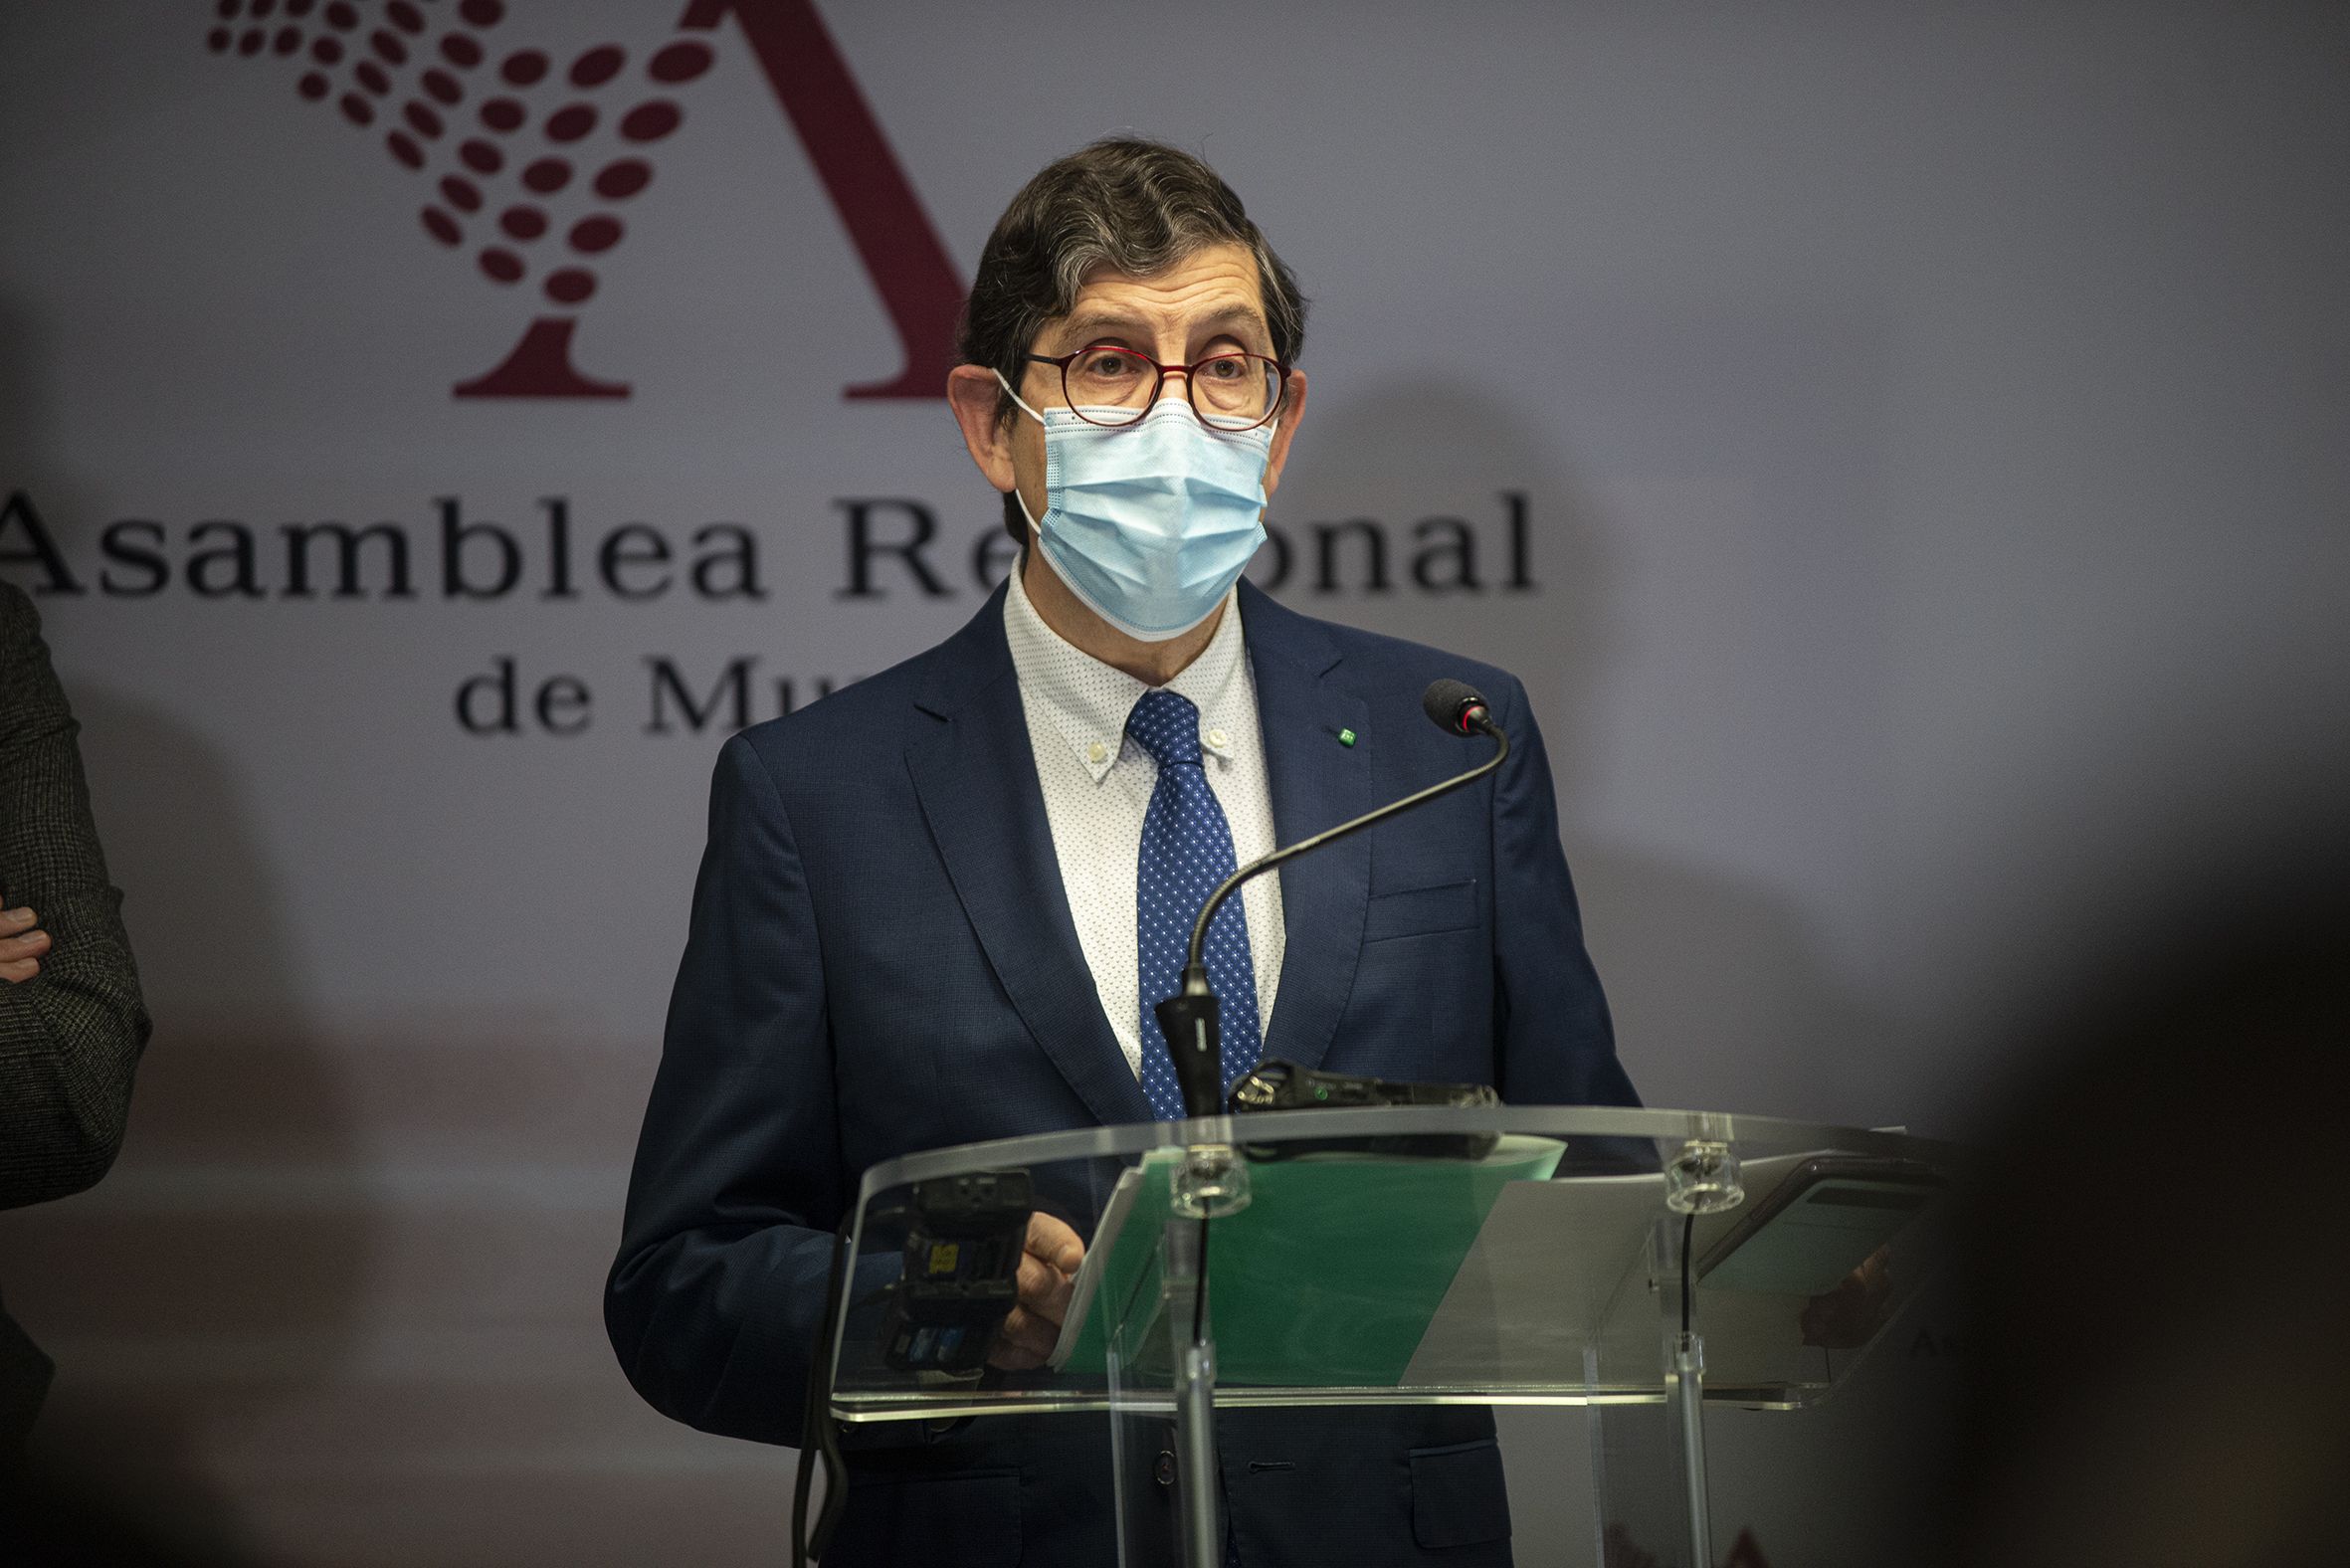 El consejero de Salud de Murcia presenta su renuncia tras su polémica vacunación